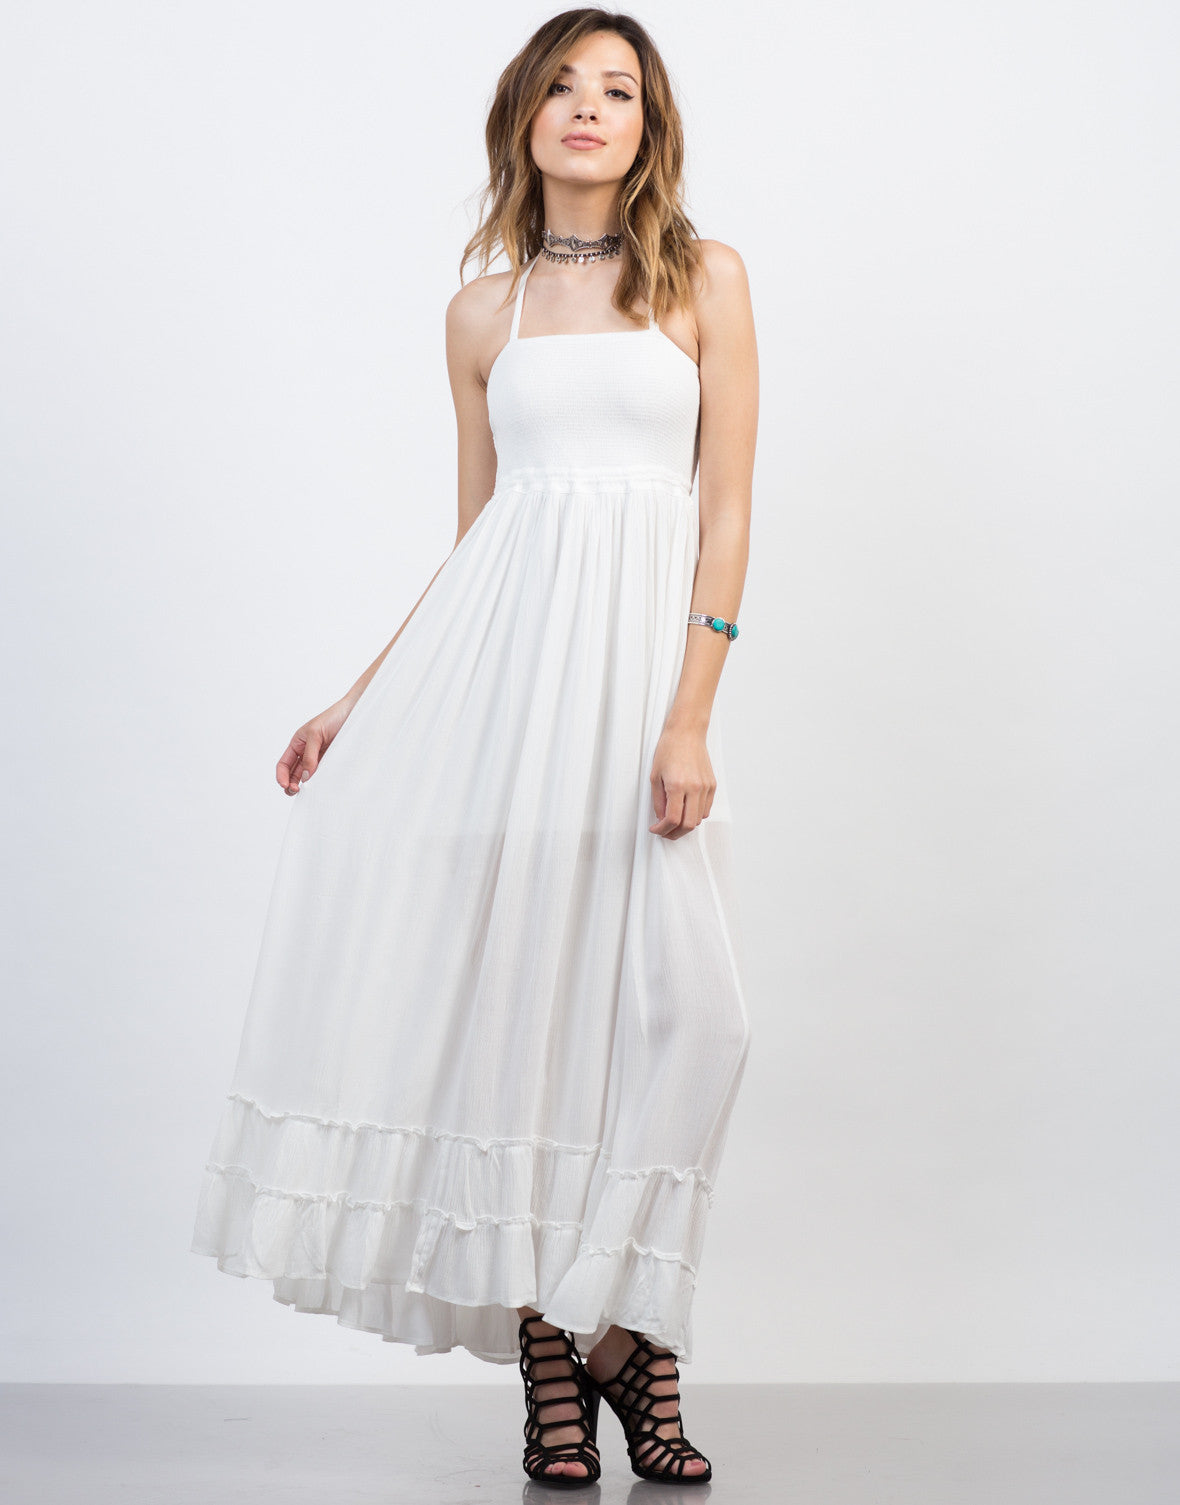 white frilly summer dress